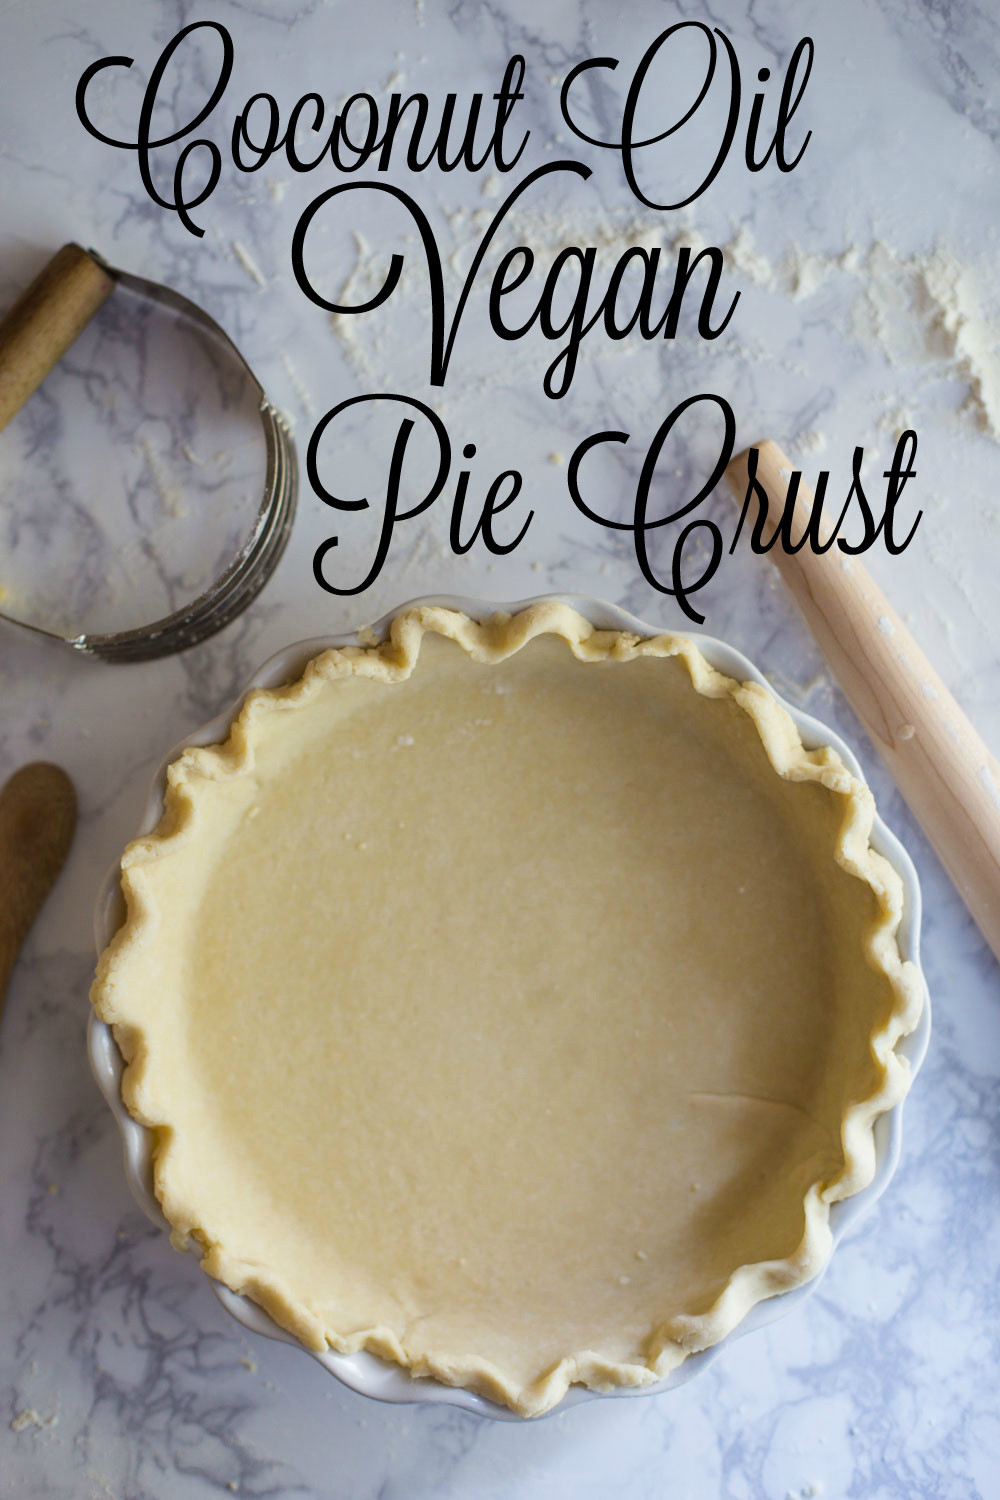 Easy Vegan Pie Crust
 Coconut Oil Vegan Pie Crust